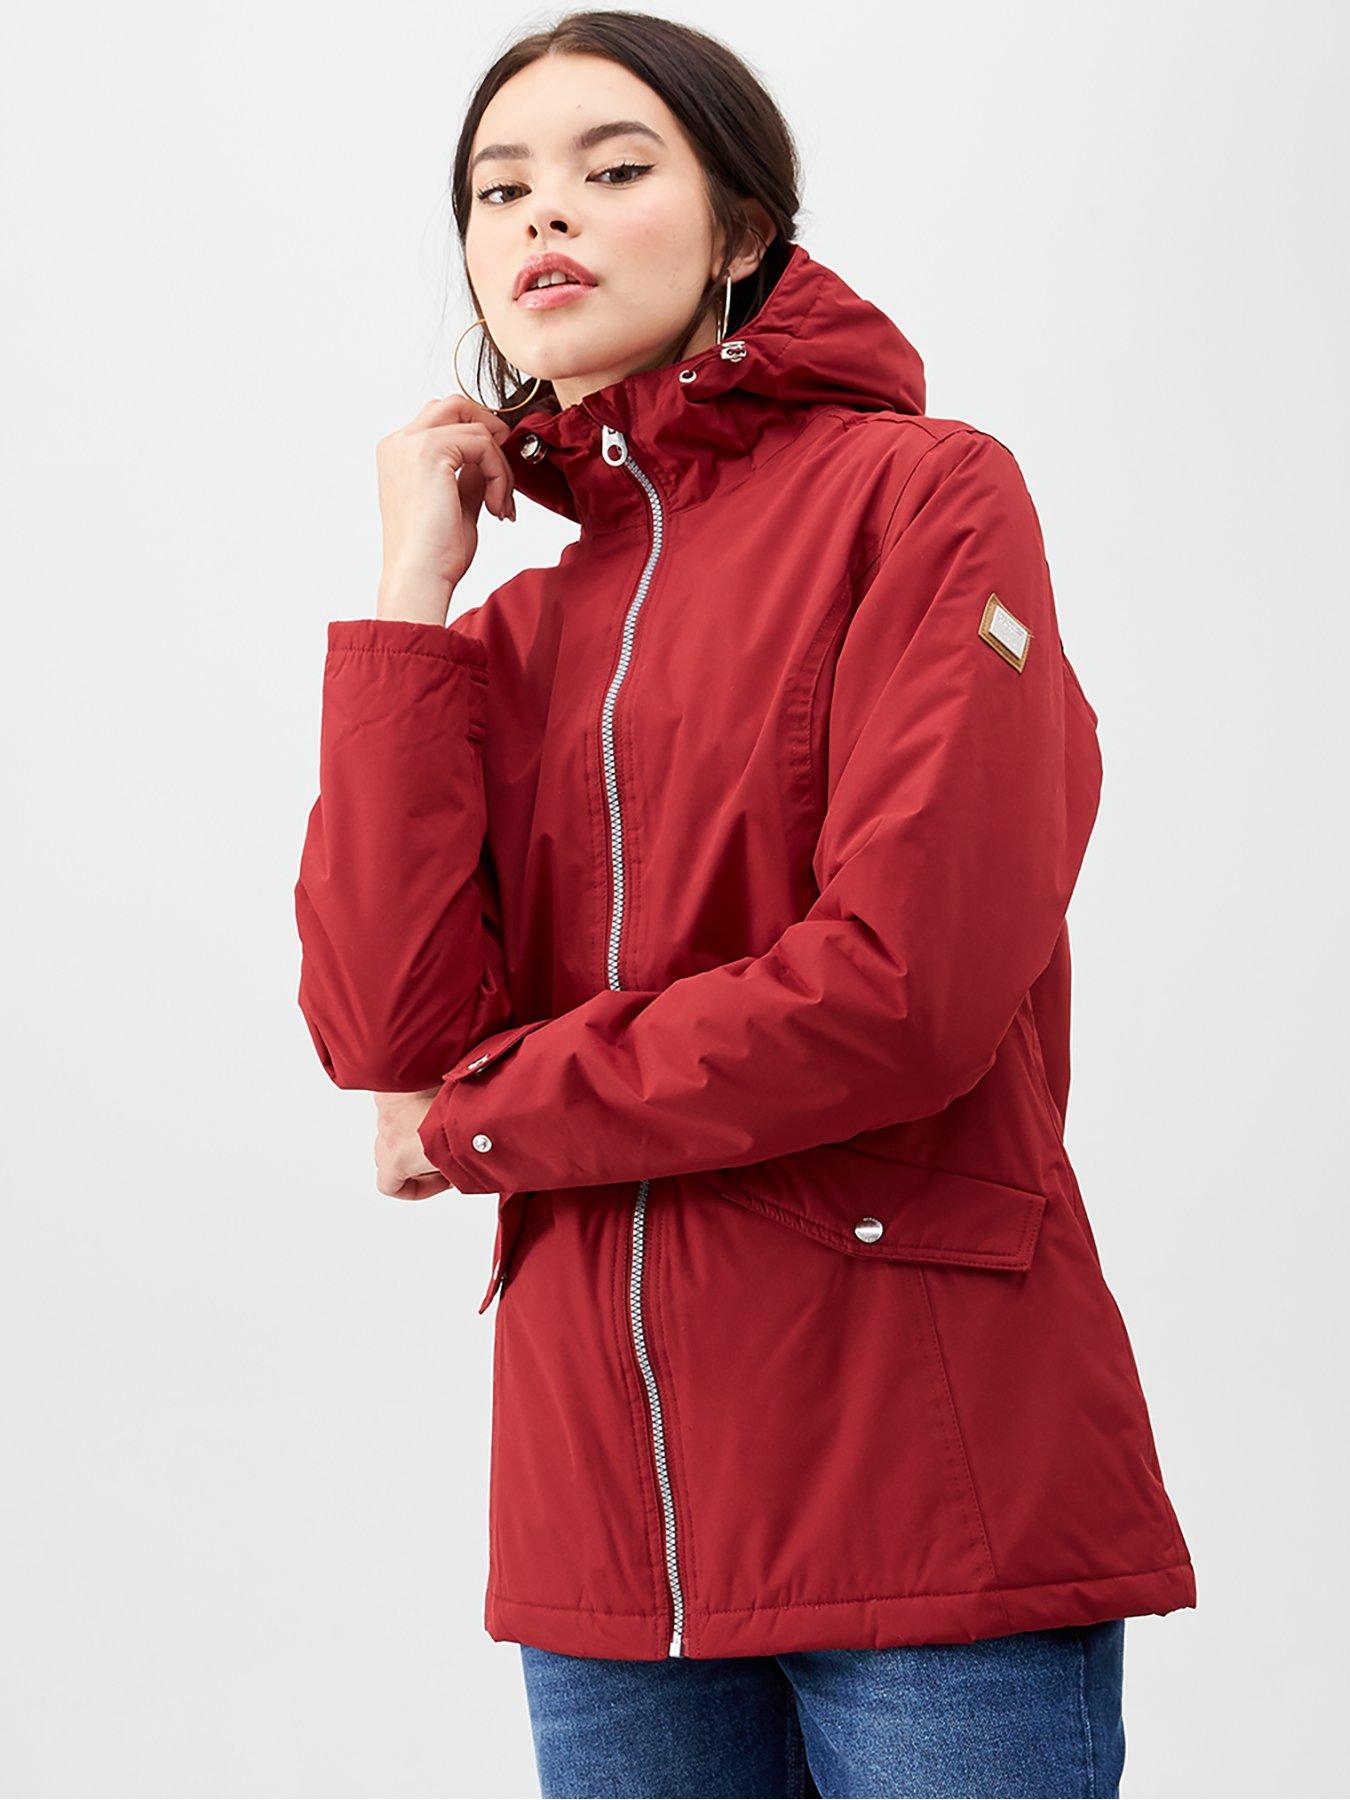 Regatta Aledo Womens Jacket Red Thermal Waterproof Windproof Outdoor Coat 